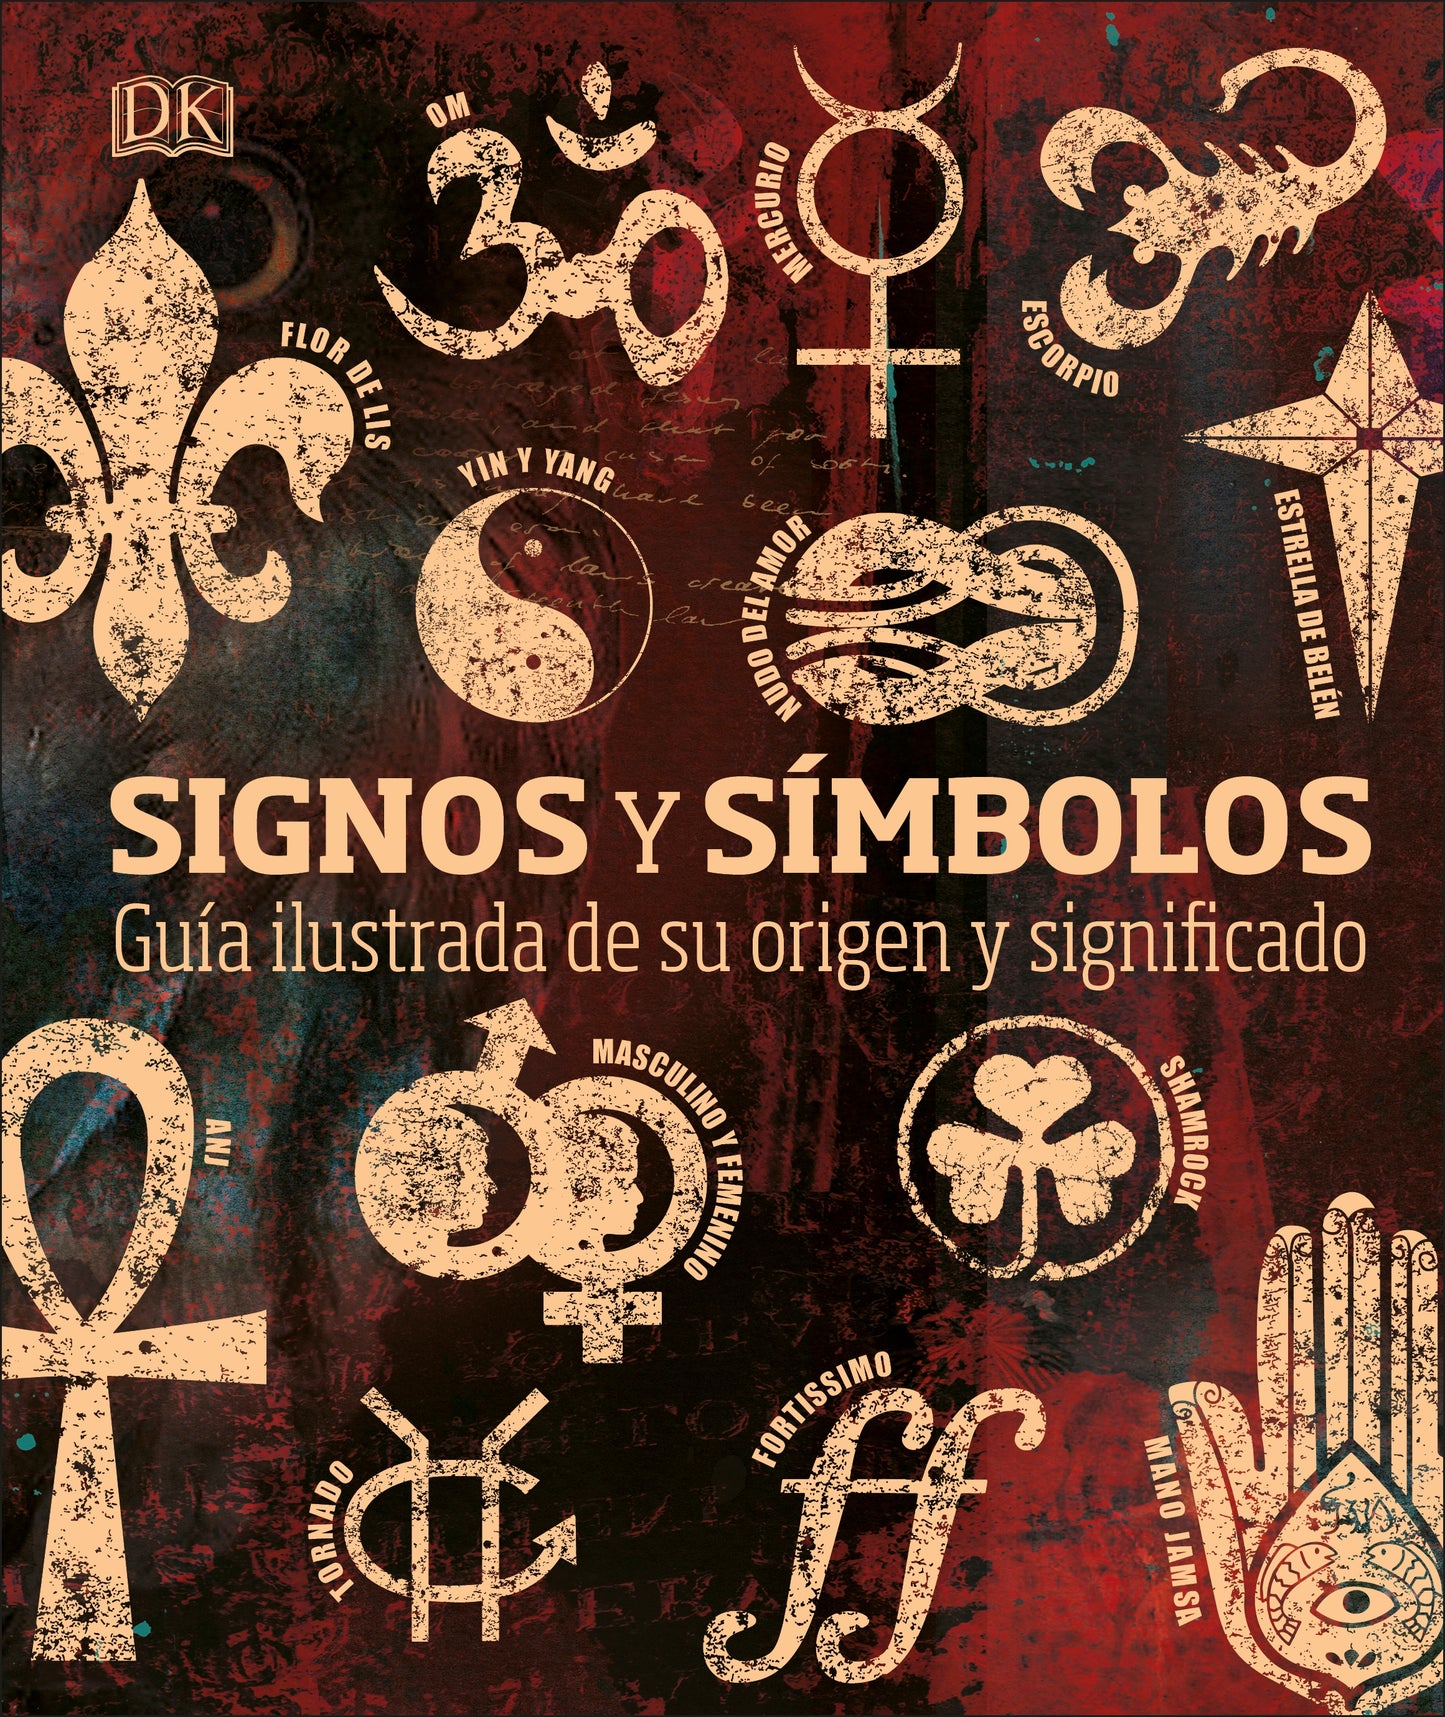 Signos y símbolos (Signs and Symbols)